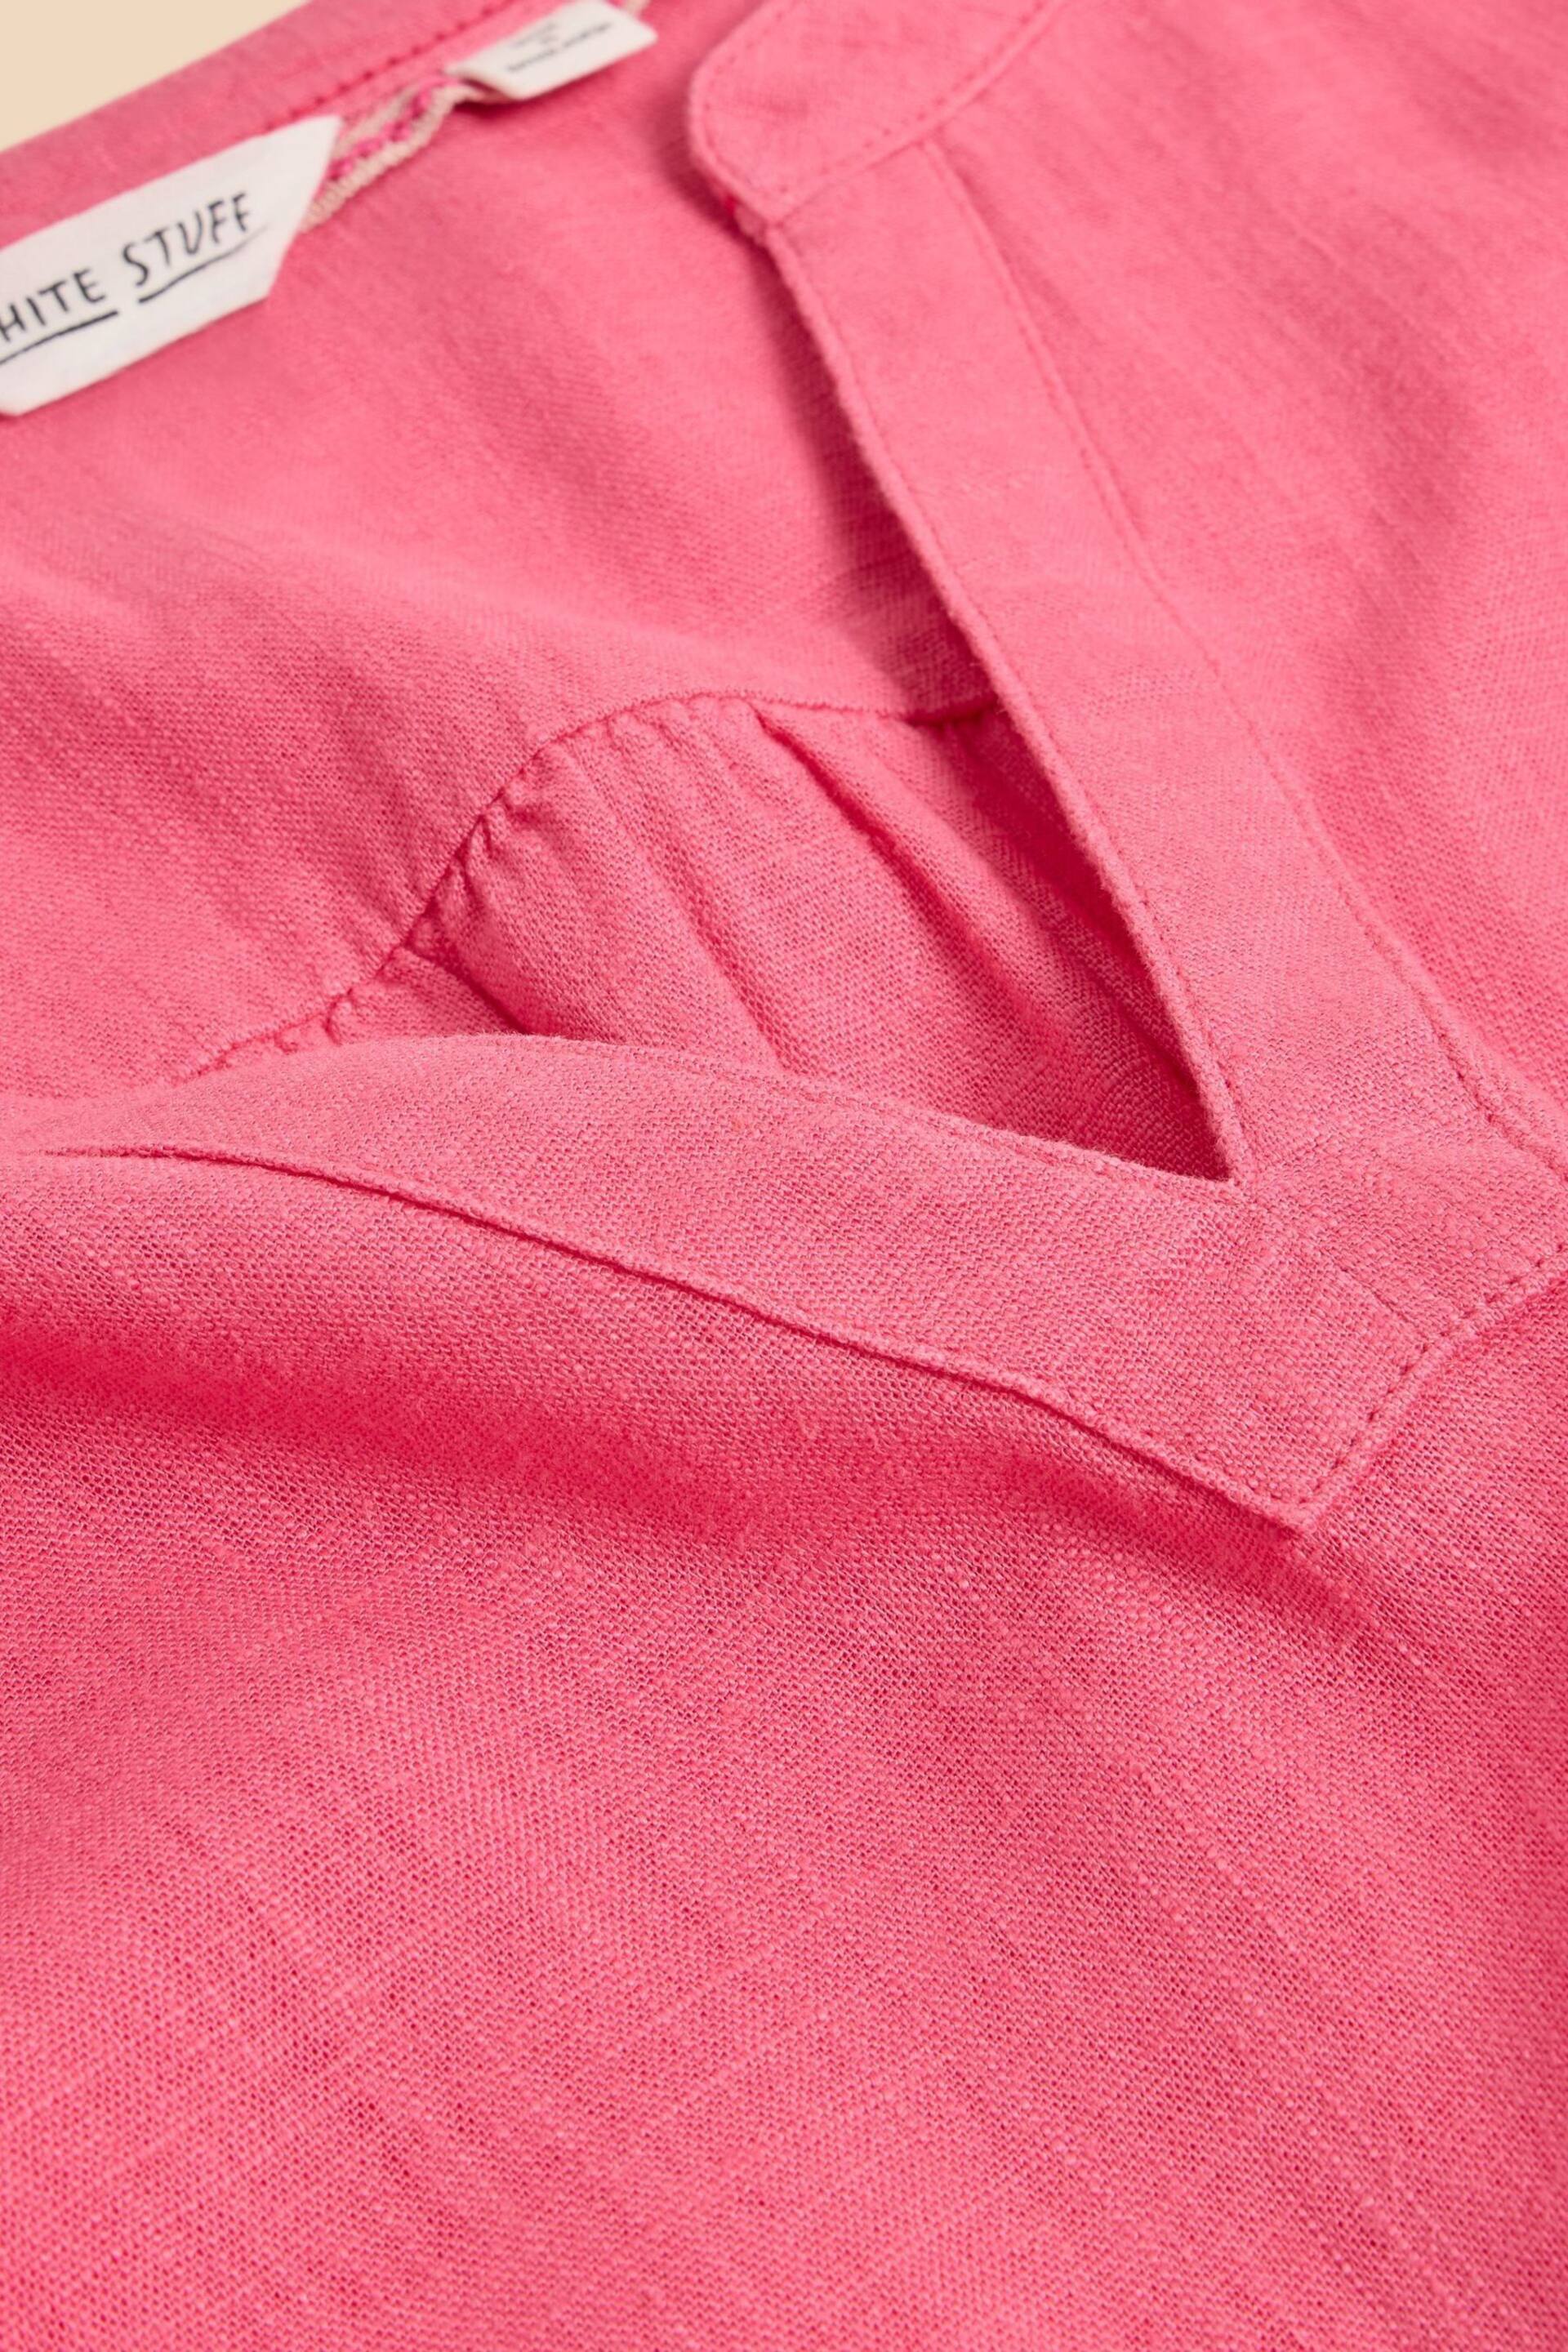 White Stuff Pink Lydia Shift Dress - Image 7 of 7